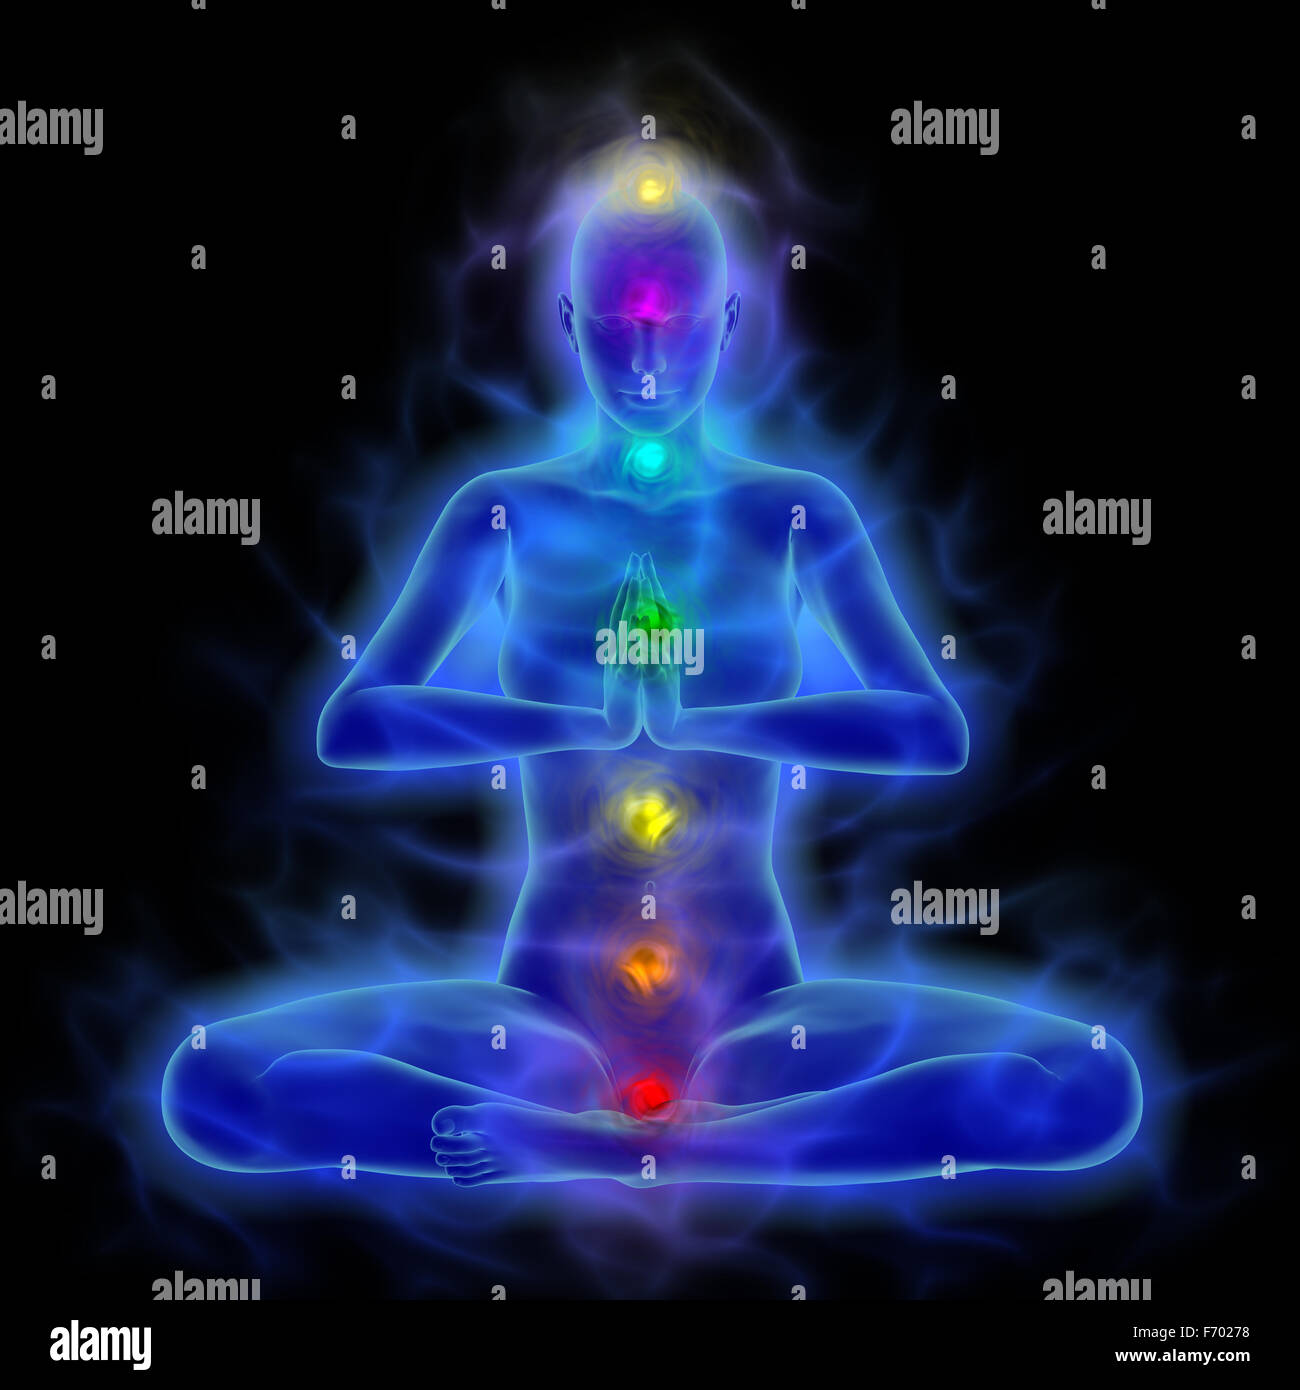 Corps énergétique humain - silhouette avec aura et chakras dans la méditation Banque D'Images